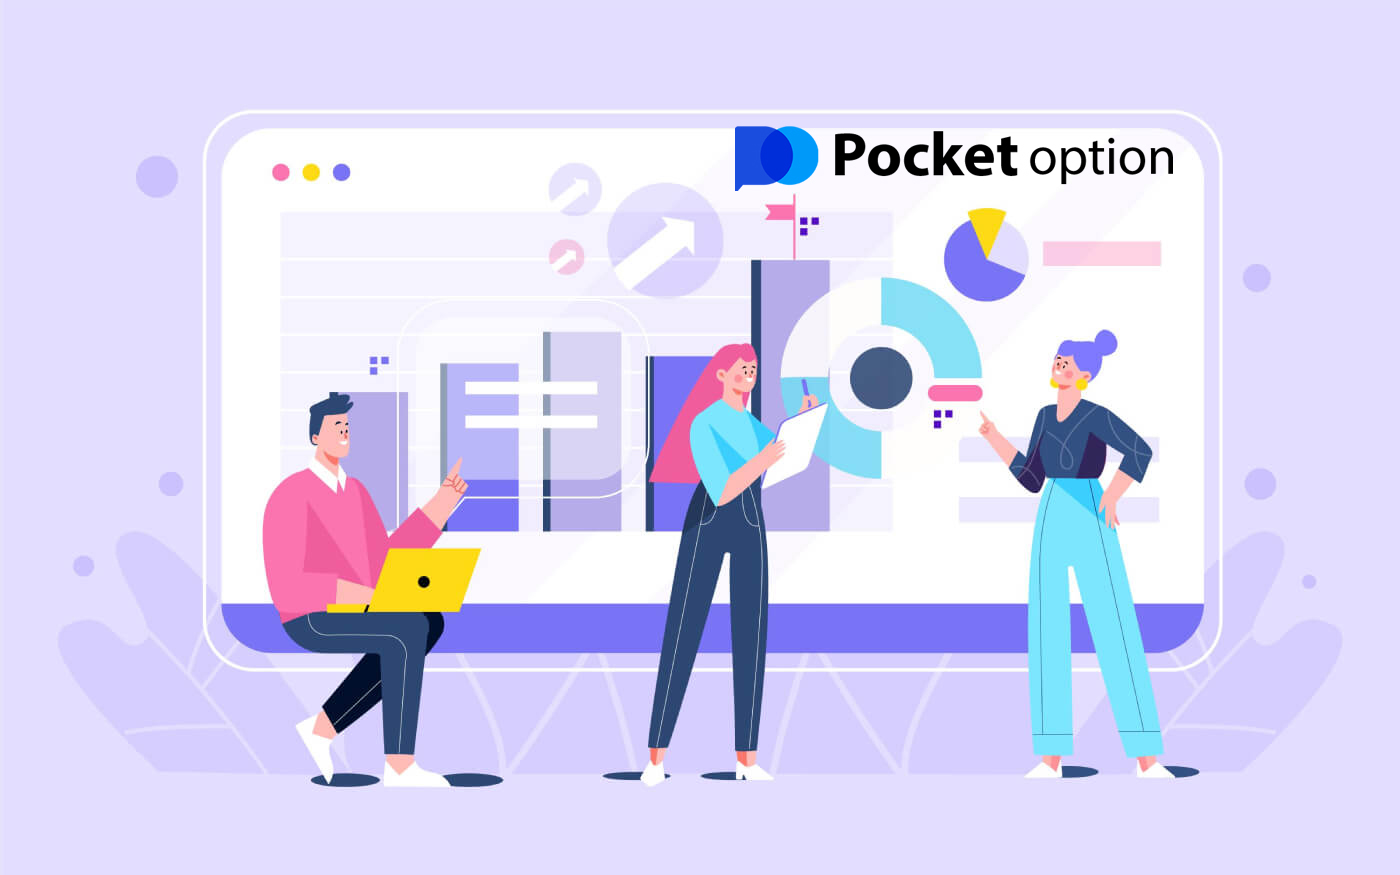 كيفية تسجيل الدخول والبدء في تداول الخيارات الرقمية في Pocket Option 